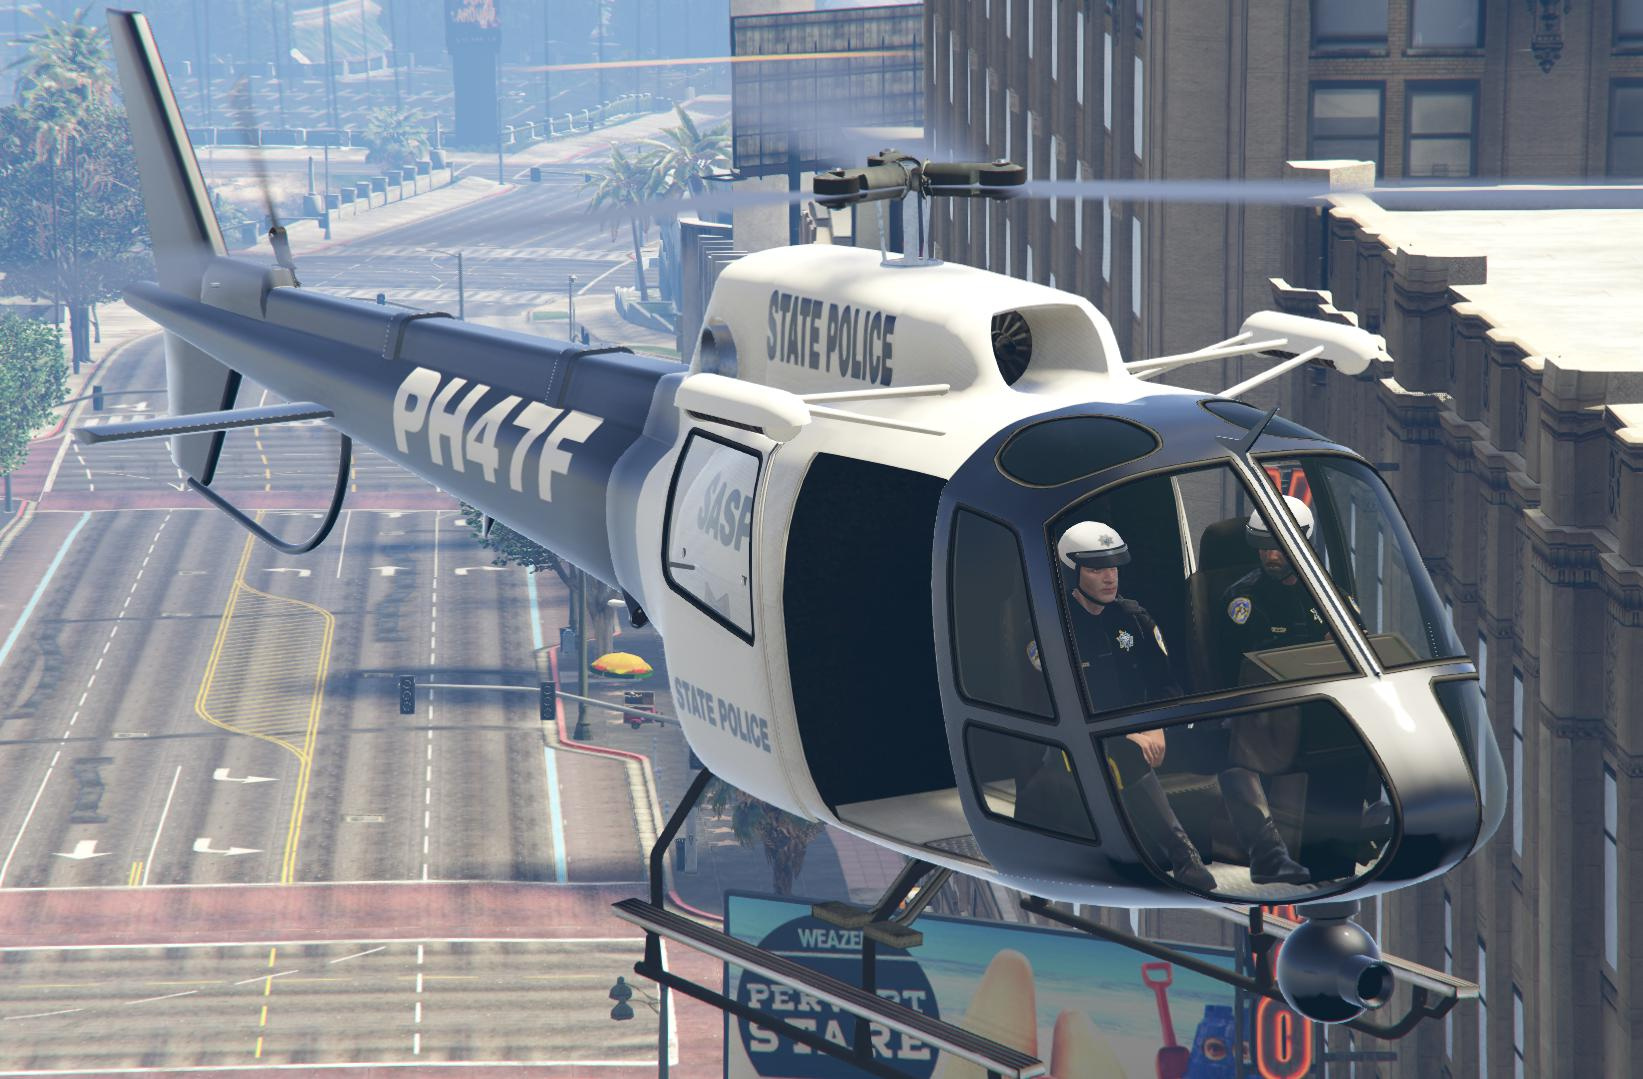 Police Maverick GTA V (SFPD Air Support Unit) para GTA San Andreas